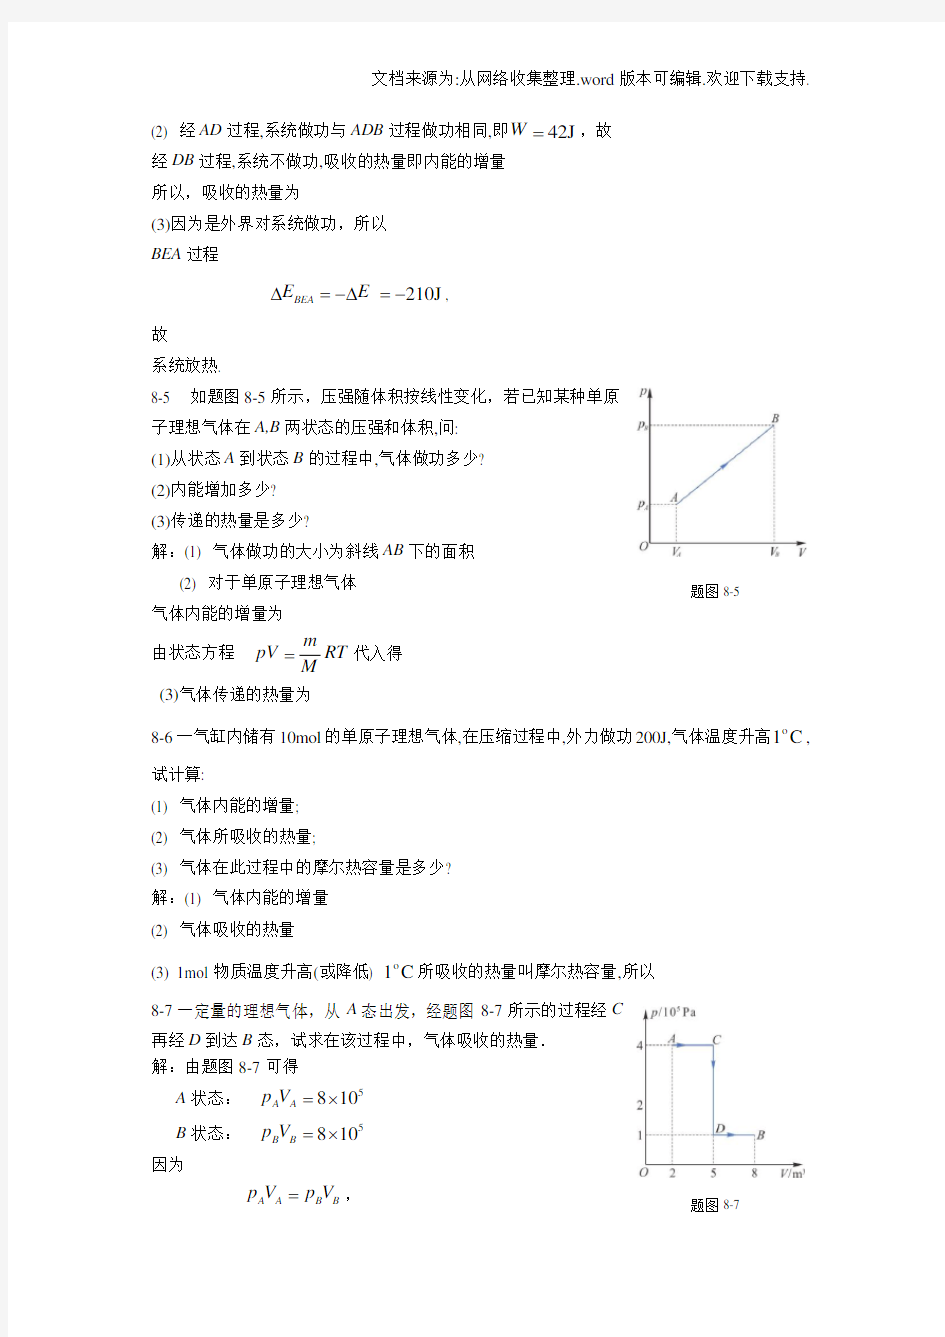 新编基础物理学王少杰第二版第八章习题解答(供参考)